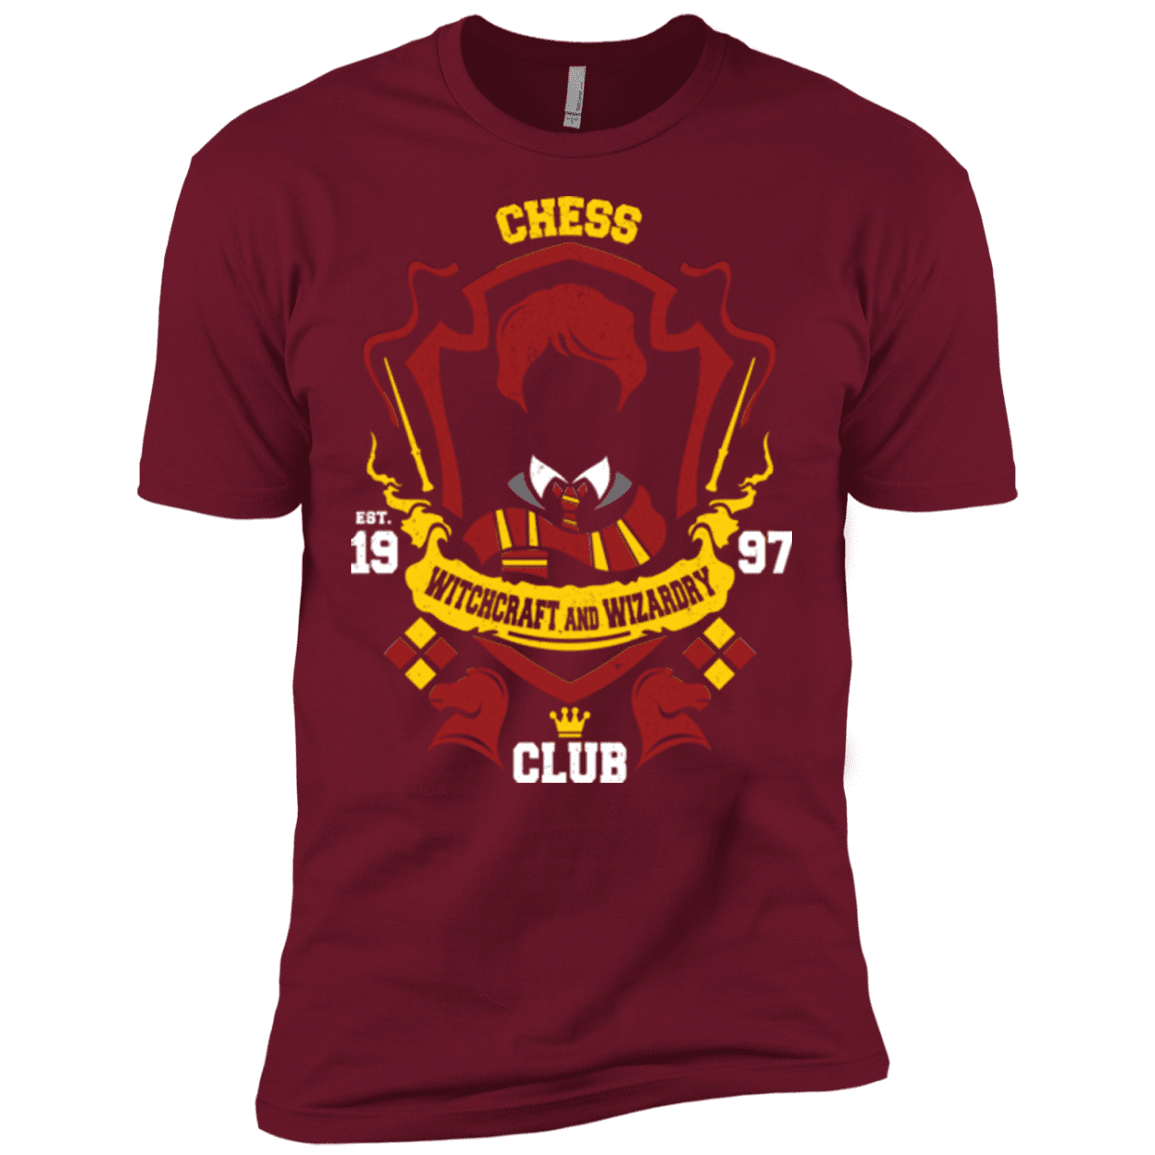 T-Shirts Cardinal / X-Small Chess Club Men's Premium T-Shirt